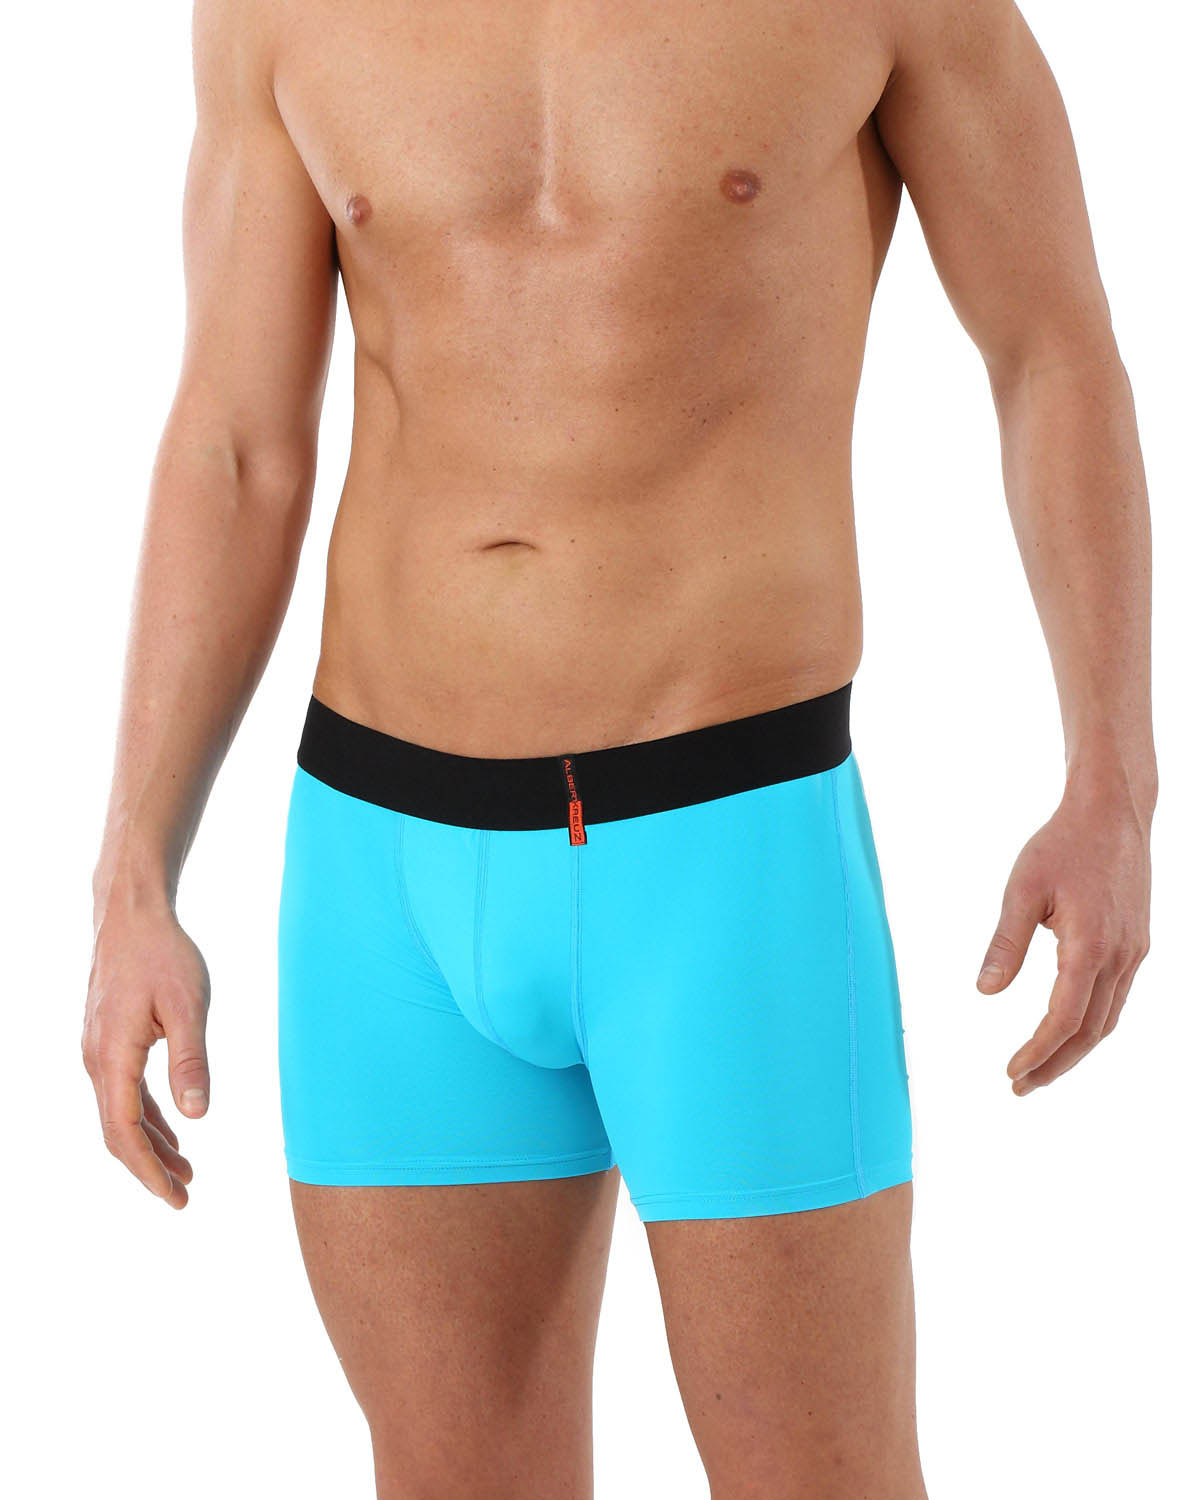 XXL M Cotton Underwear Retro Trunks Fitted Boxer Breathable Briefs S XL L QINCAO Boxer Shorts Mens 6 Pack XXXL